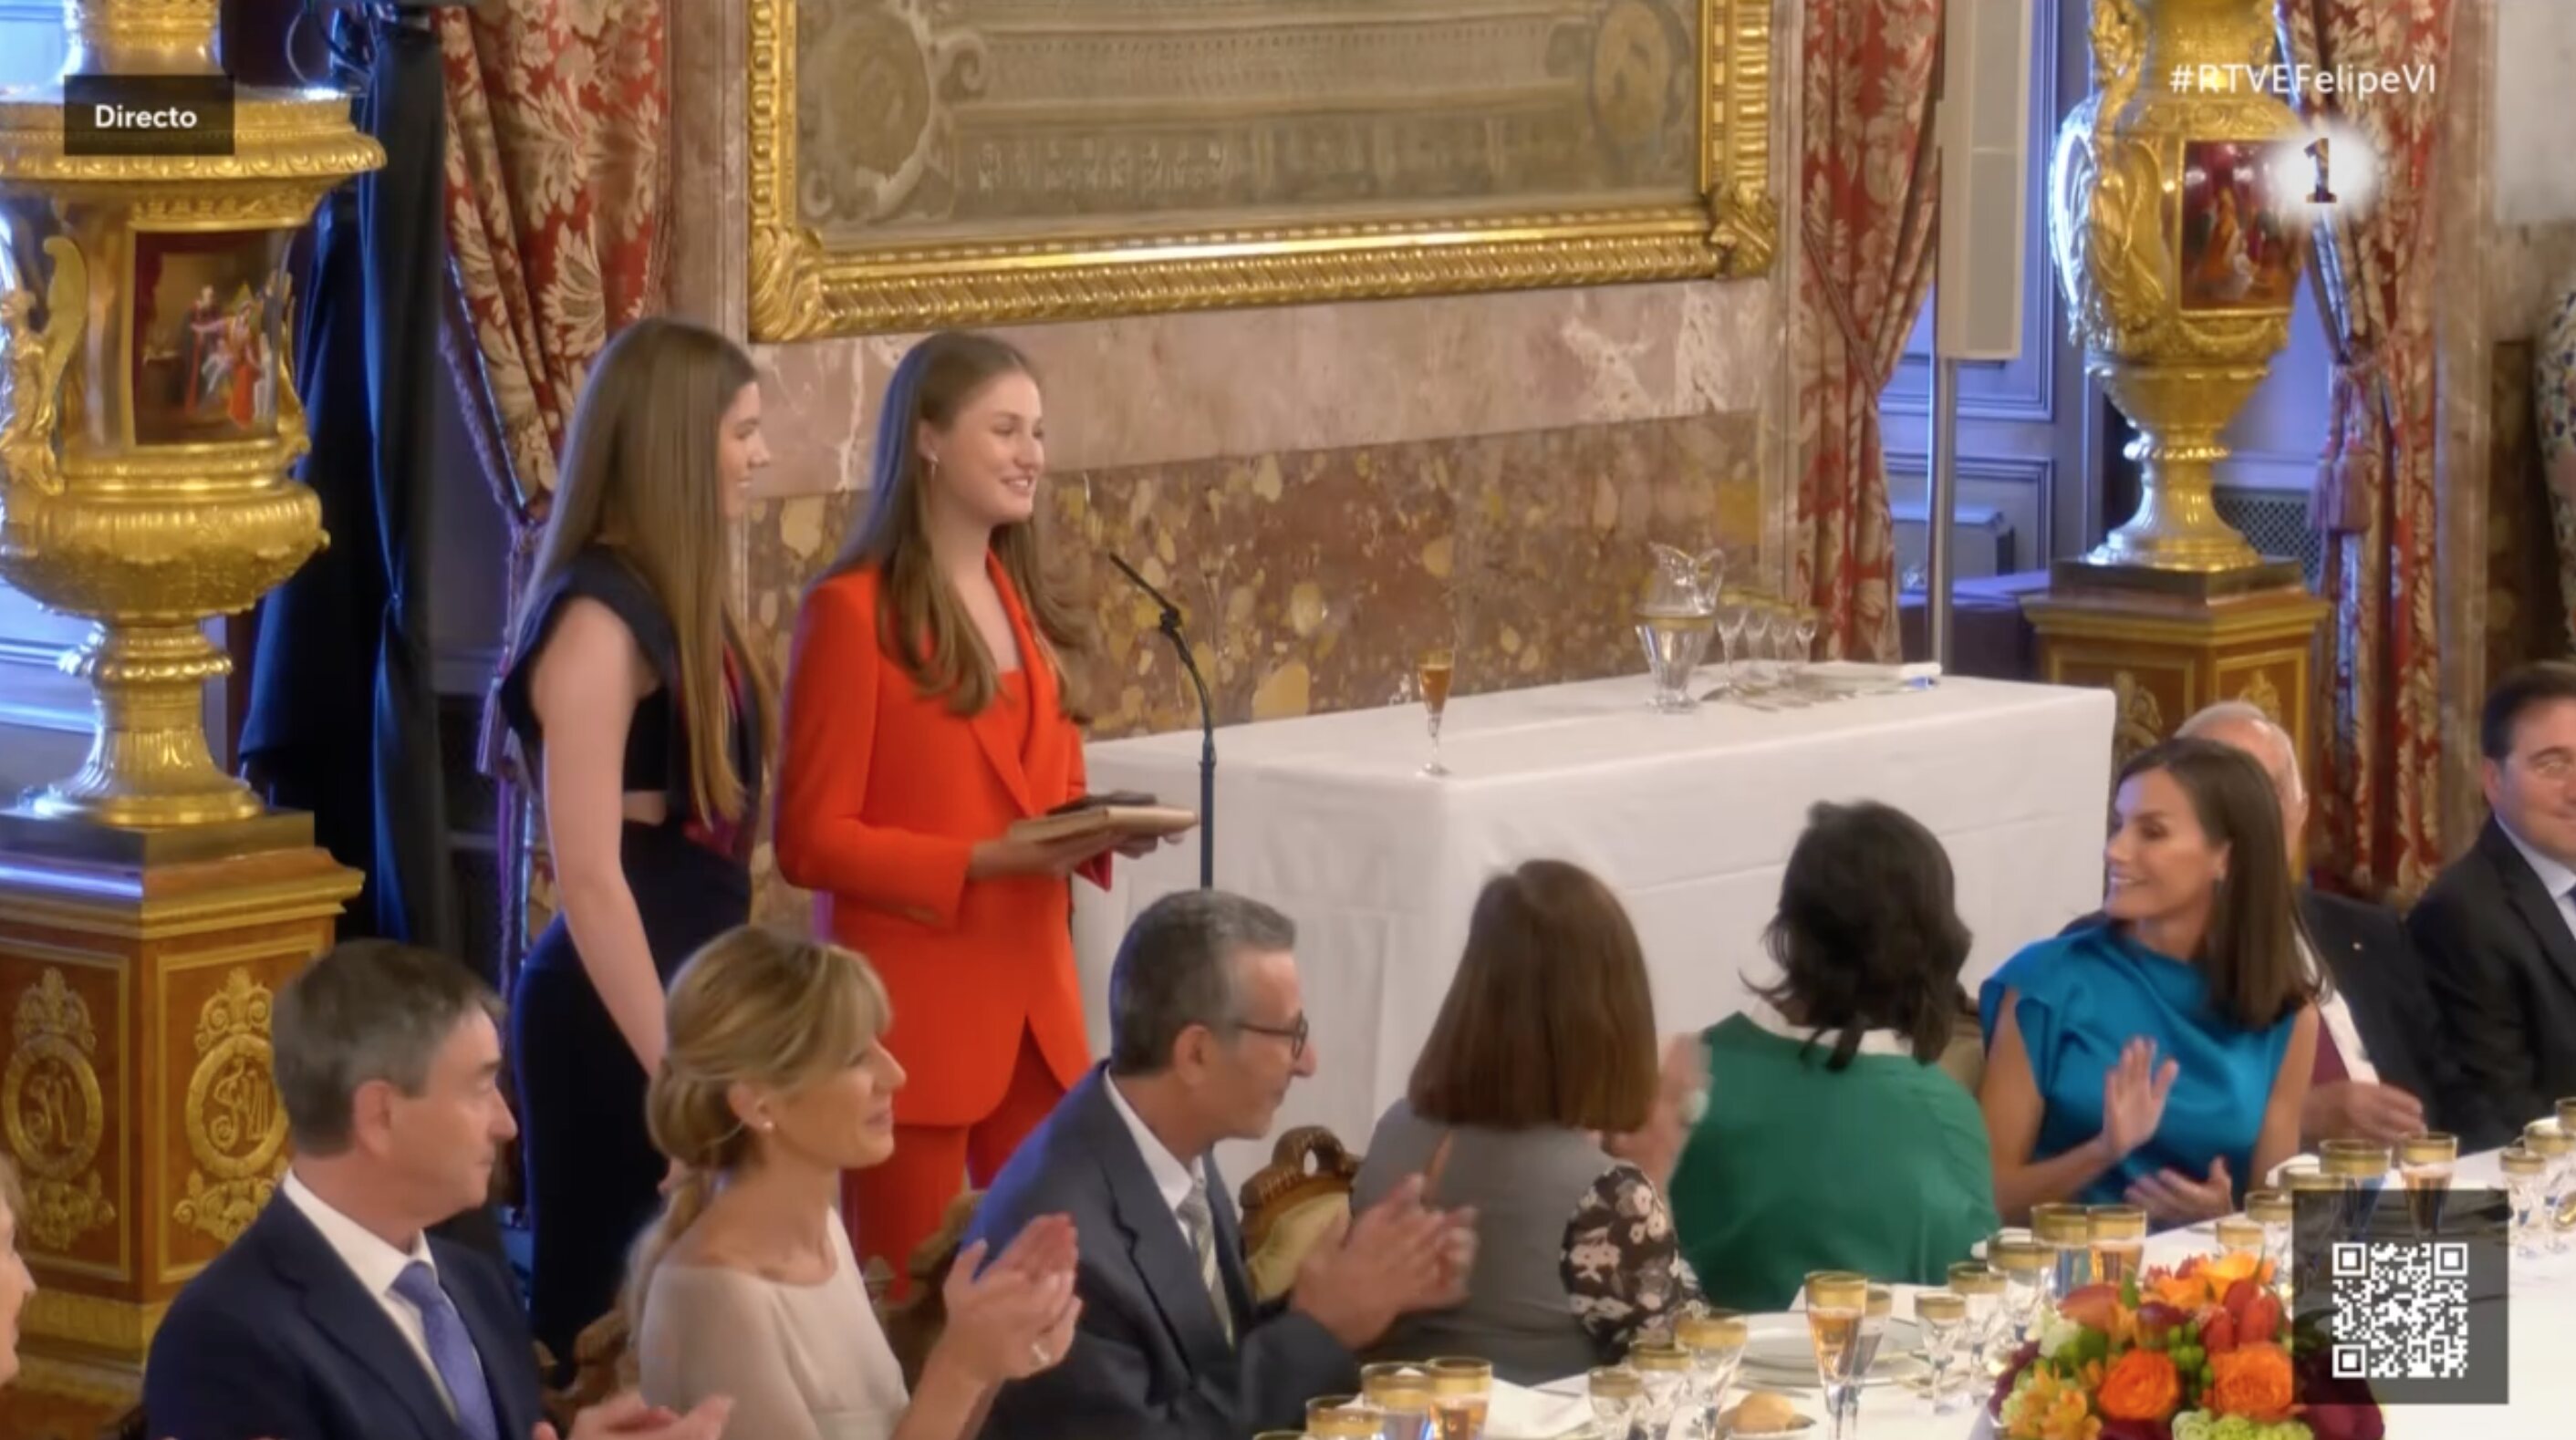 La Princesa Leonor y la Infanta Sofía en sus palabras en el almuerzo del décimo aniversario de reinado de Felipe VI